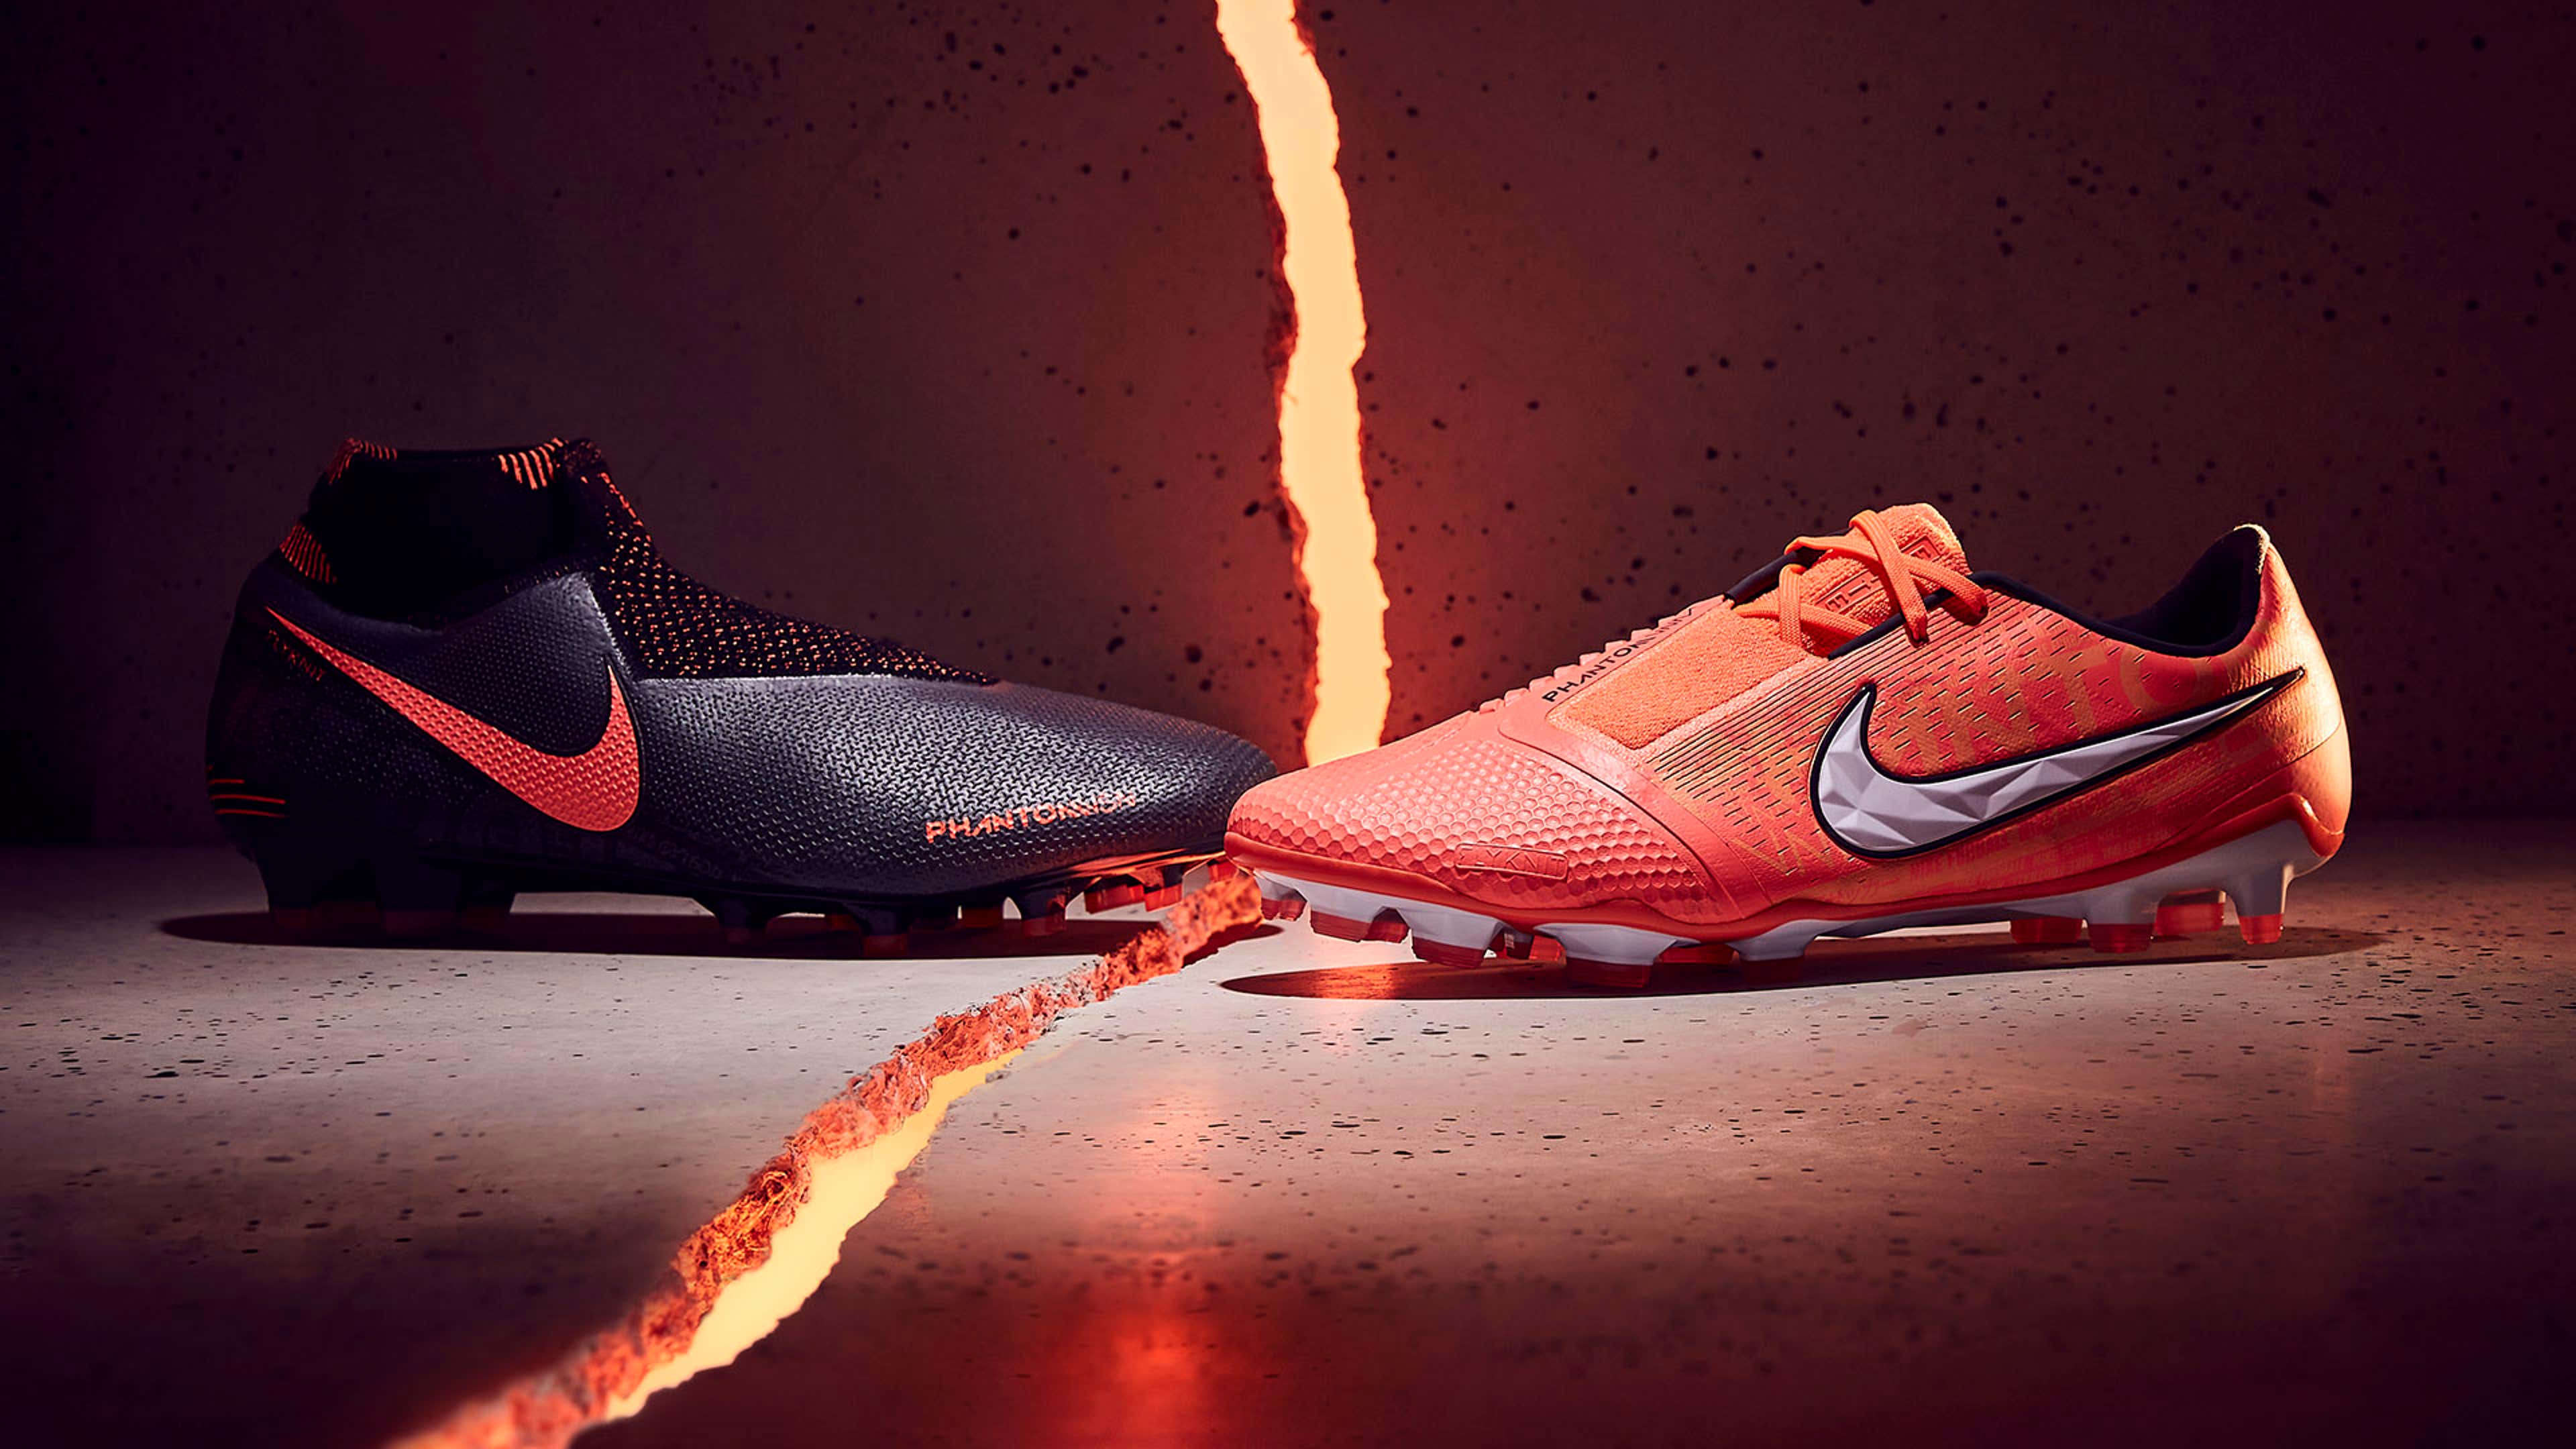 Constitución puntada Plaga Nike release new Phantom Fire boots | Goal.com English Bahrain